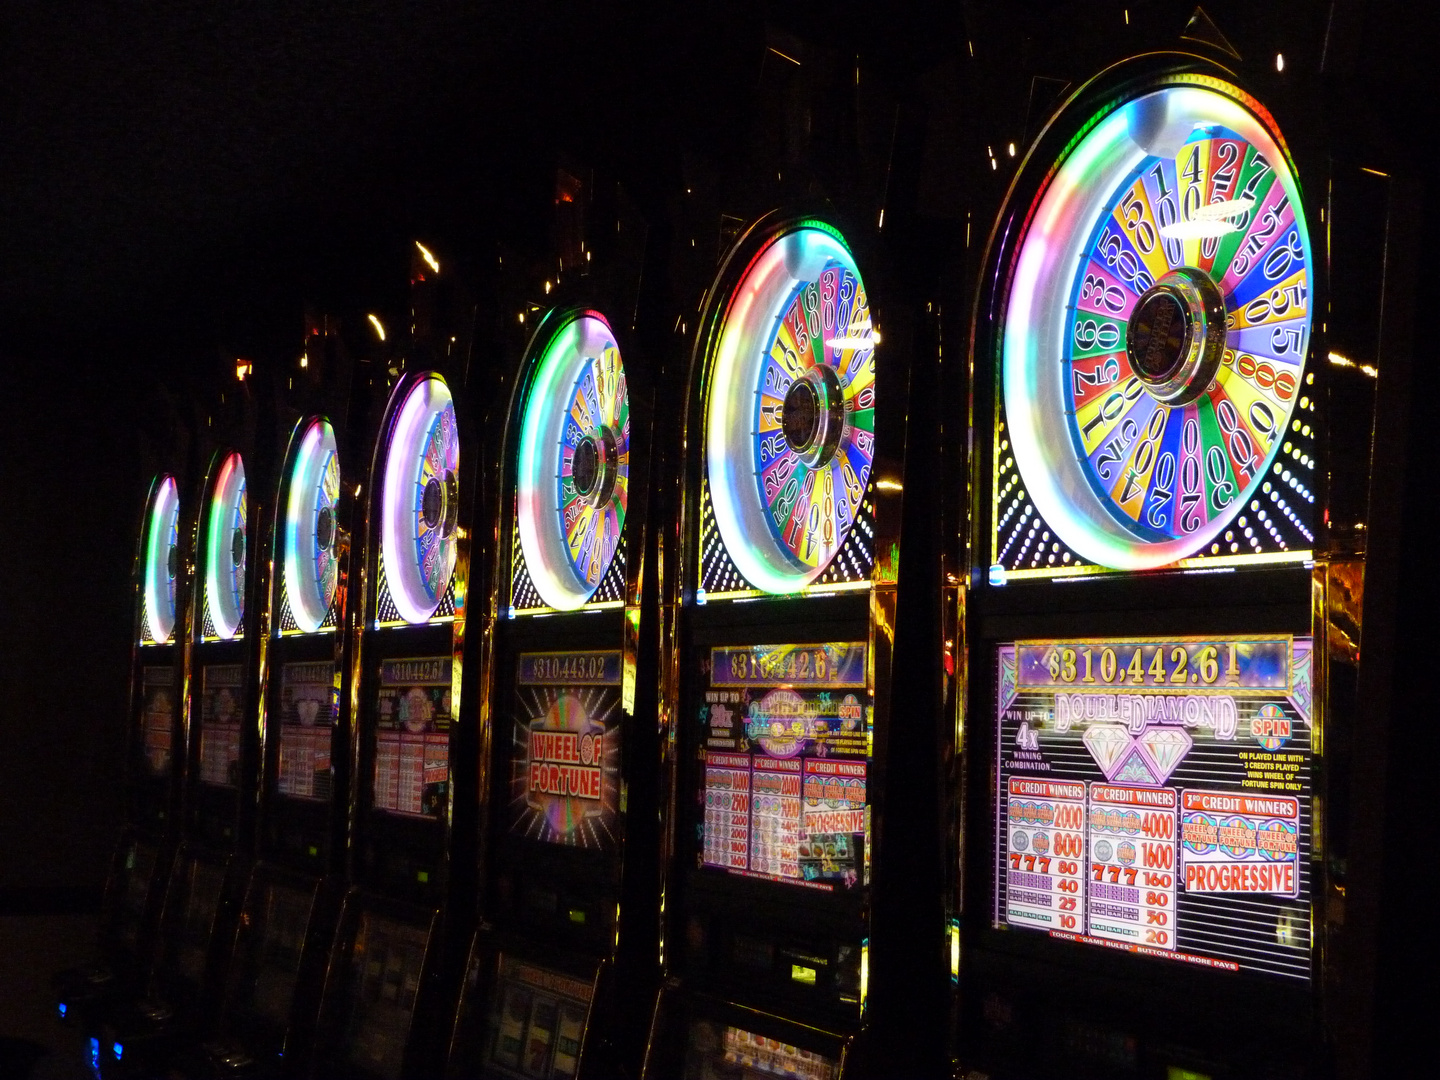 "Wheel of furtune" Circus Circus Las Vegas